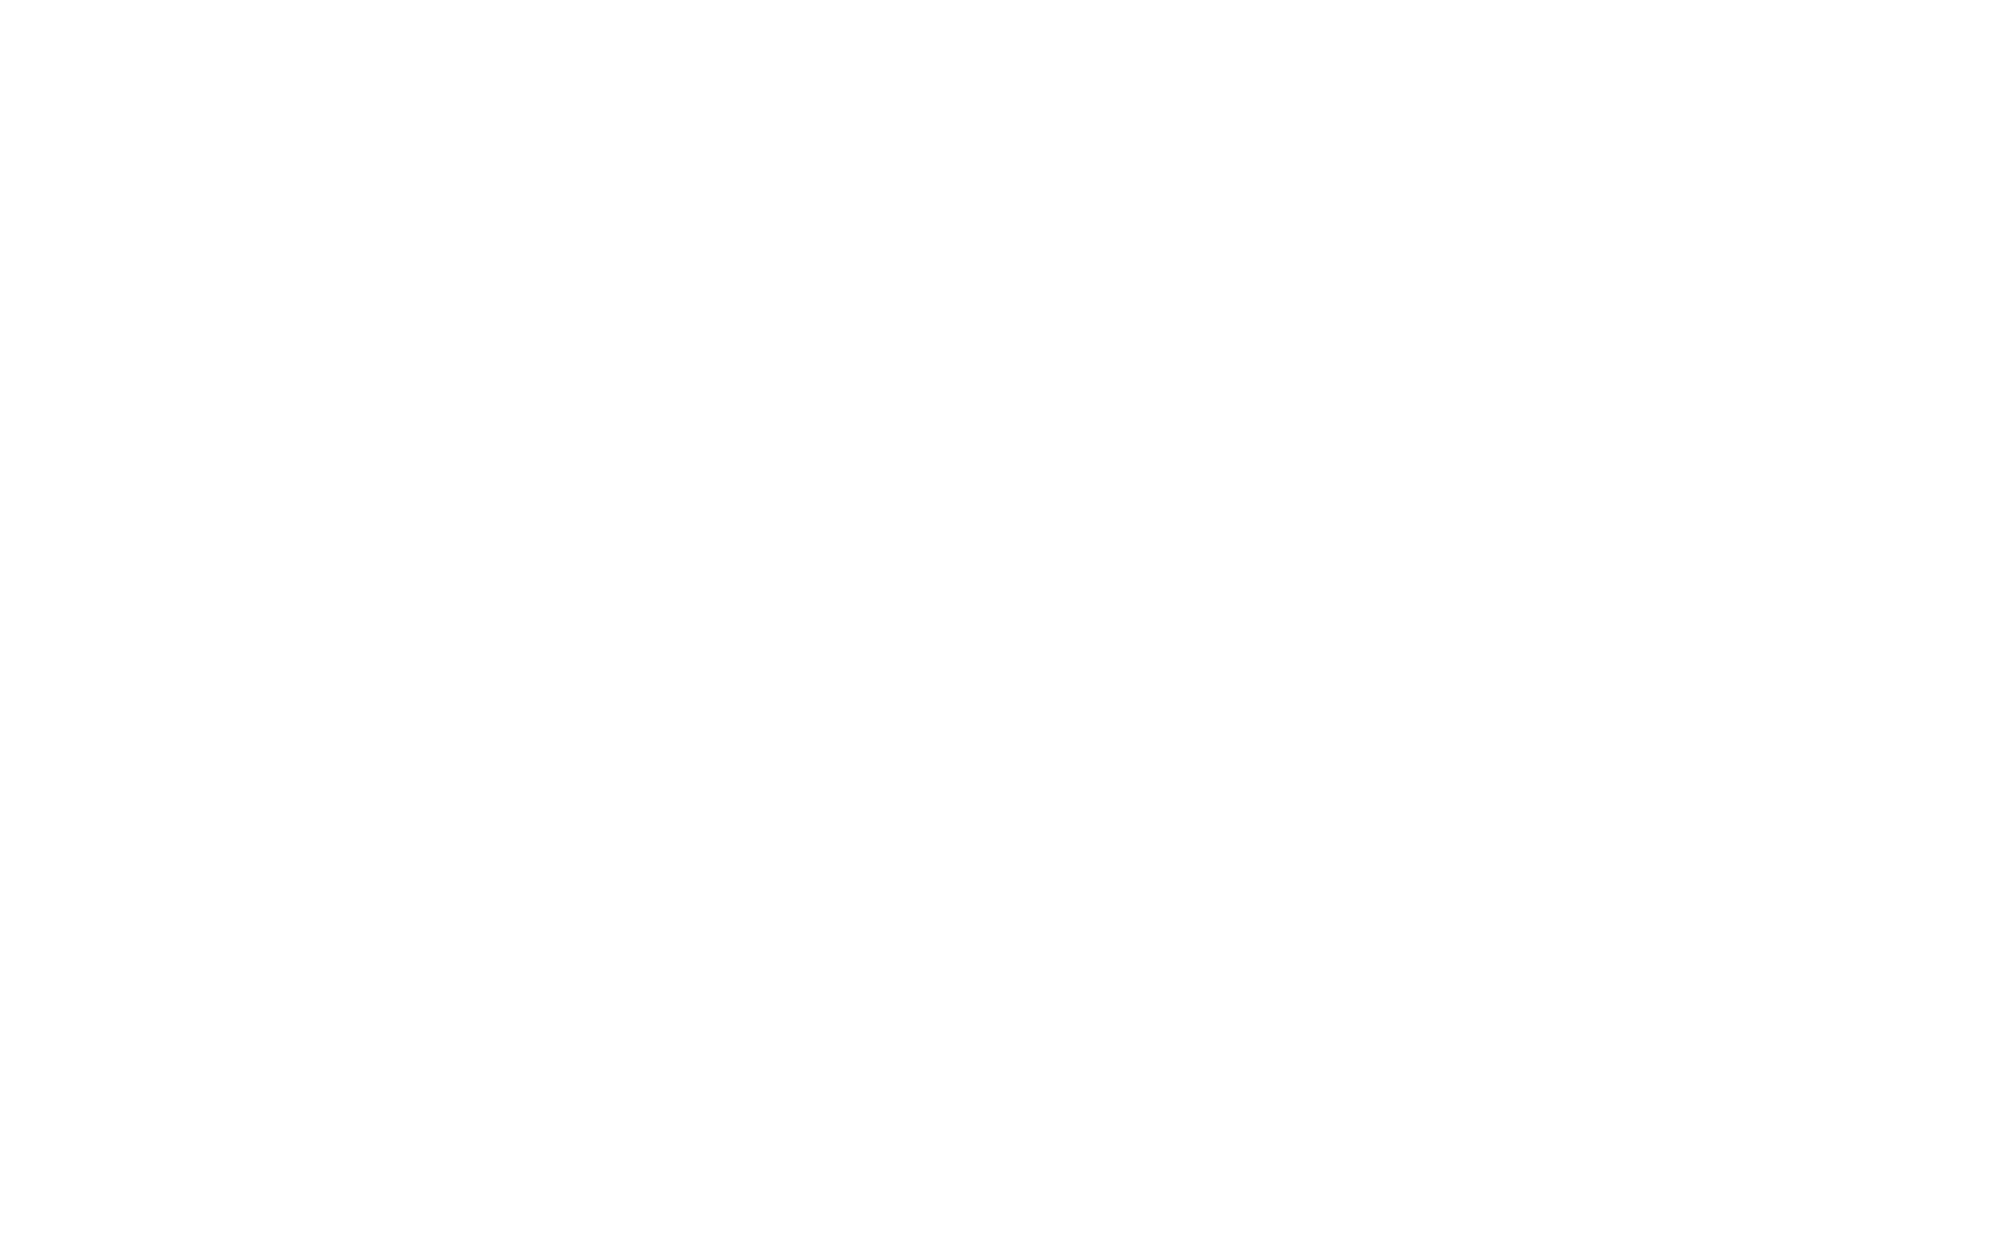 DigitalySthan